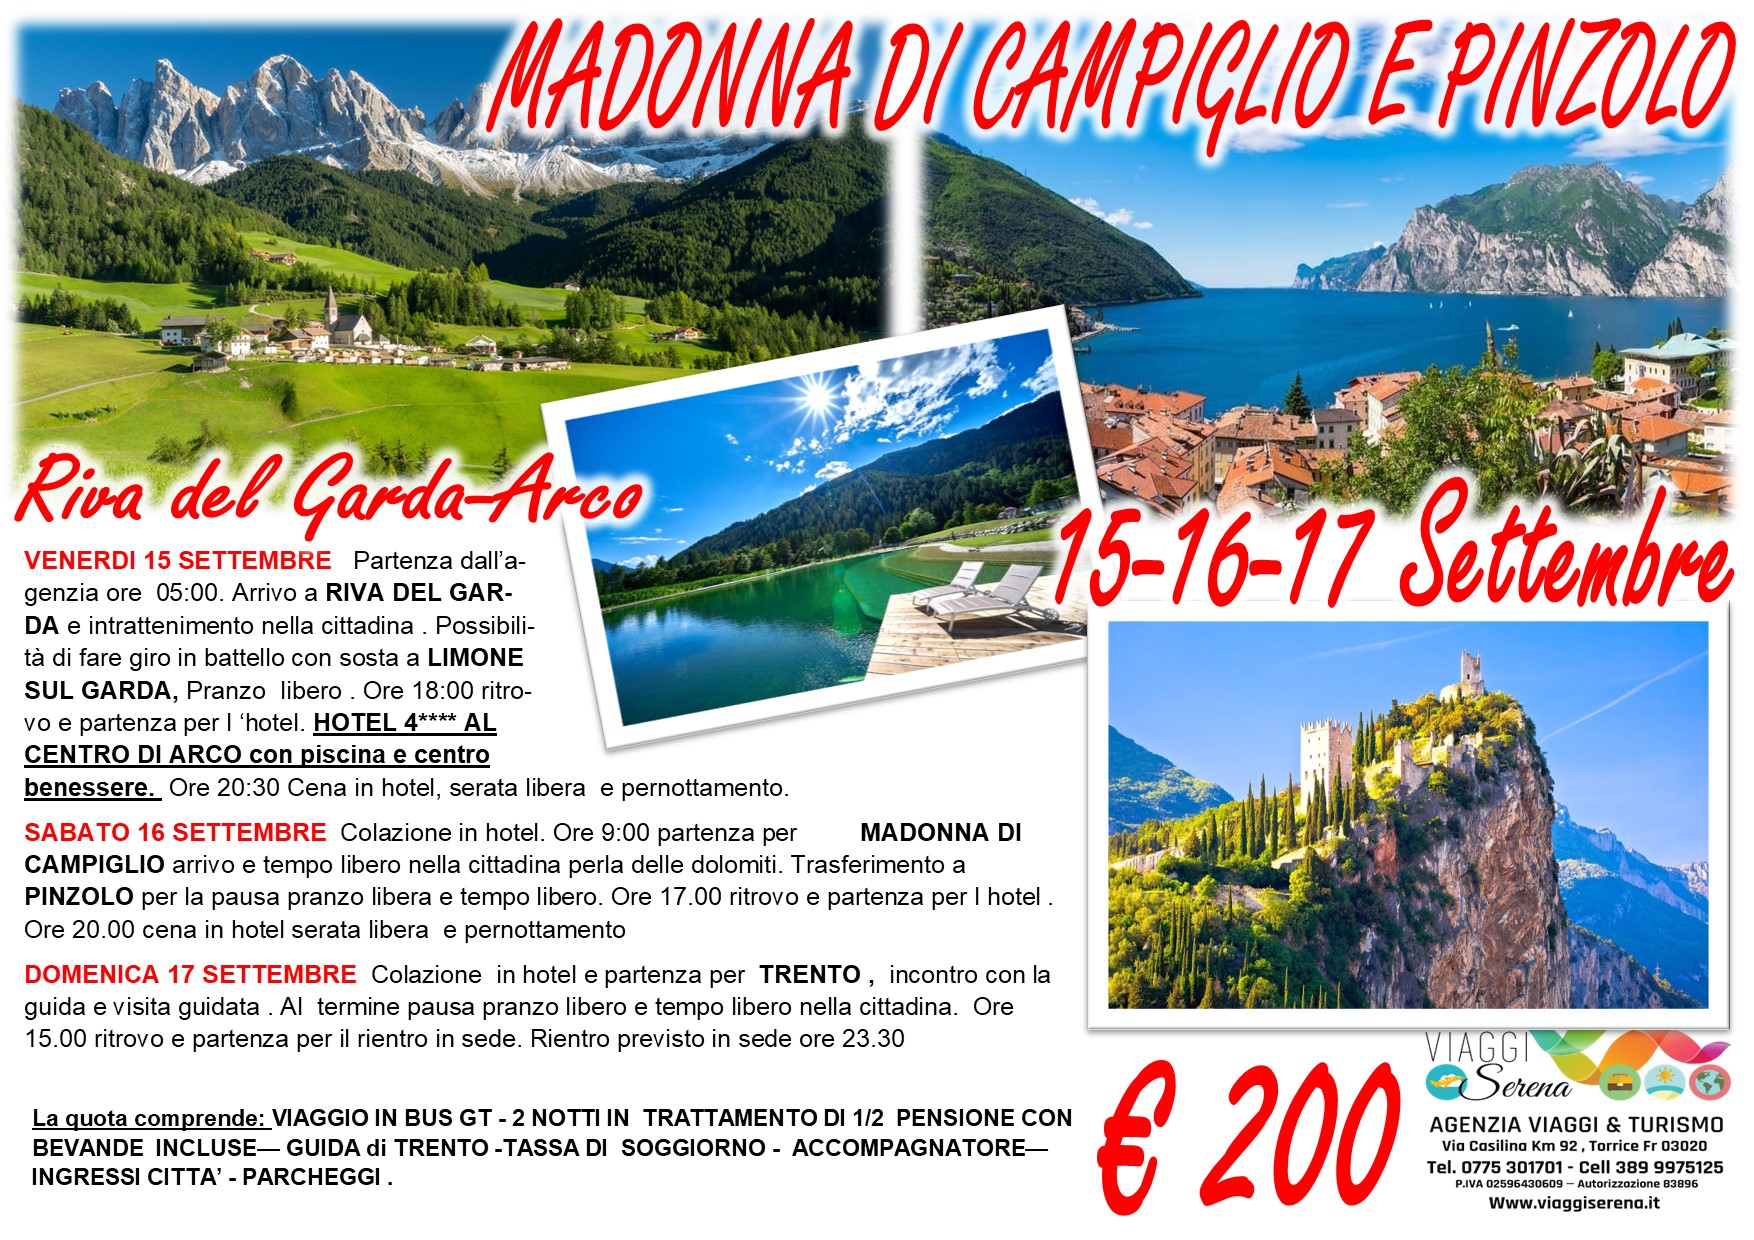 Viaggi di Gruppo: Riva del Garda, Madonna di Campiglio, Trento & Pinzolo 15-16-17 Settembre  € 200,00